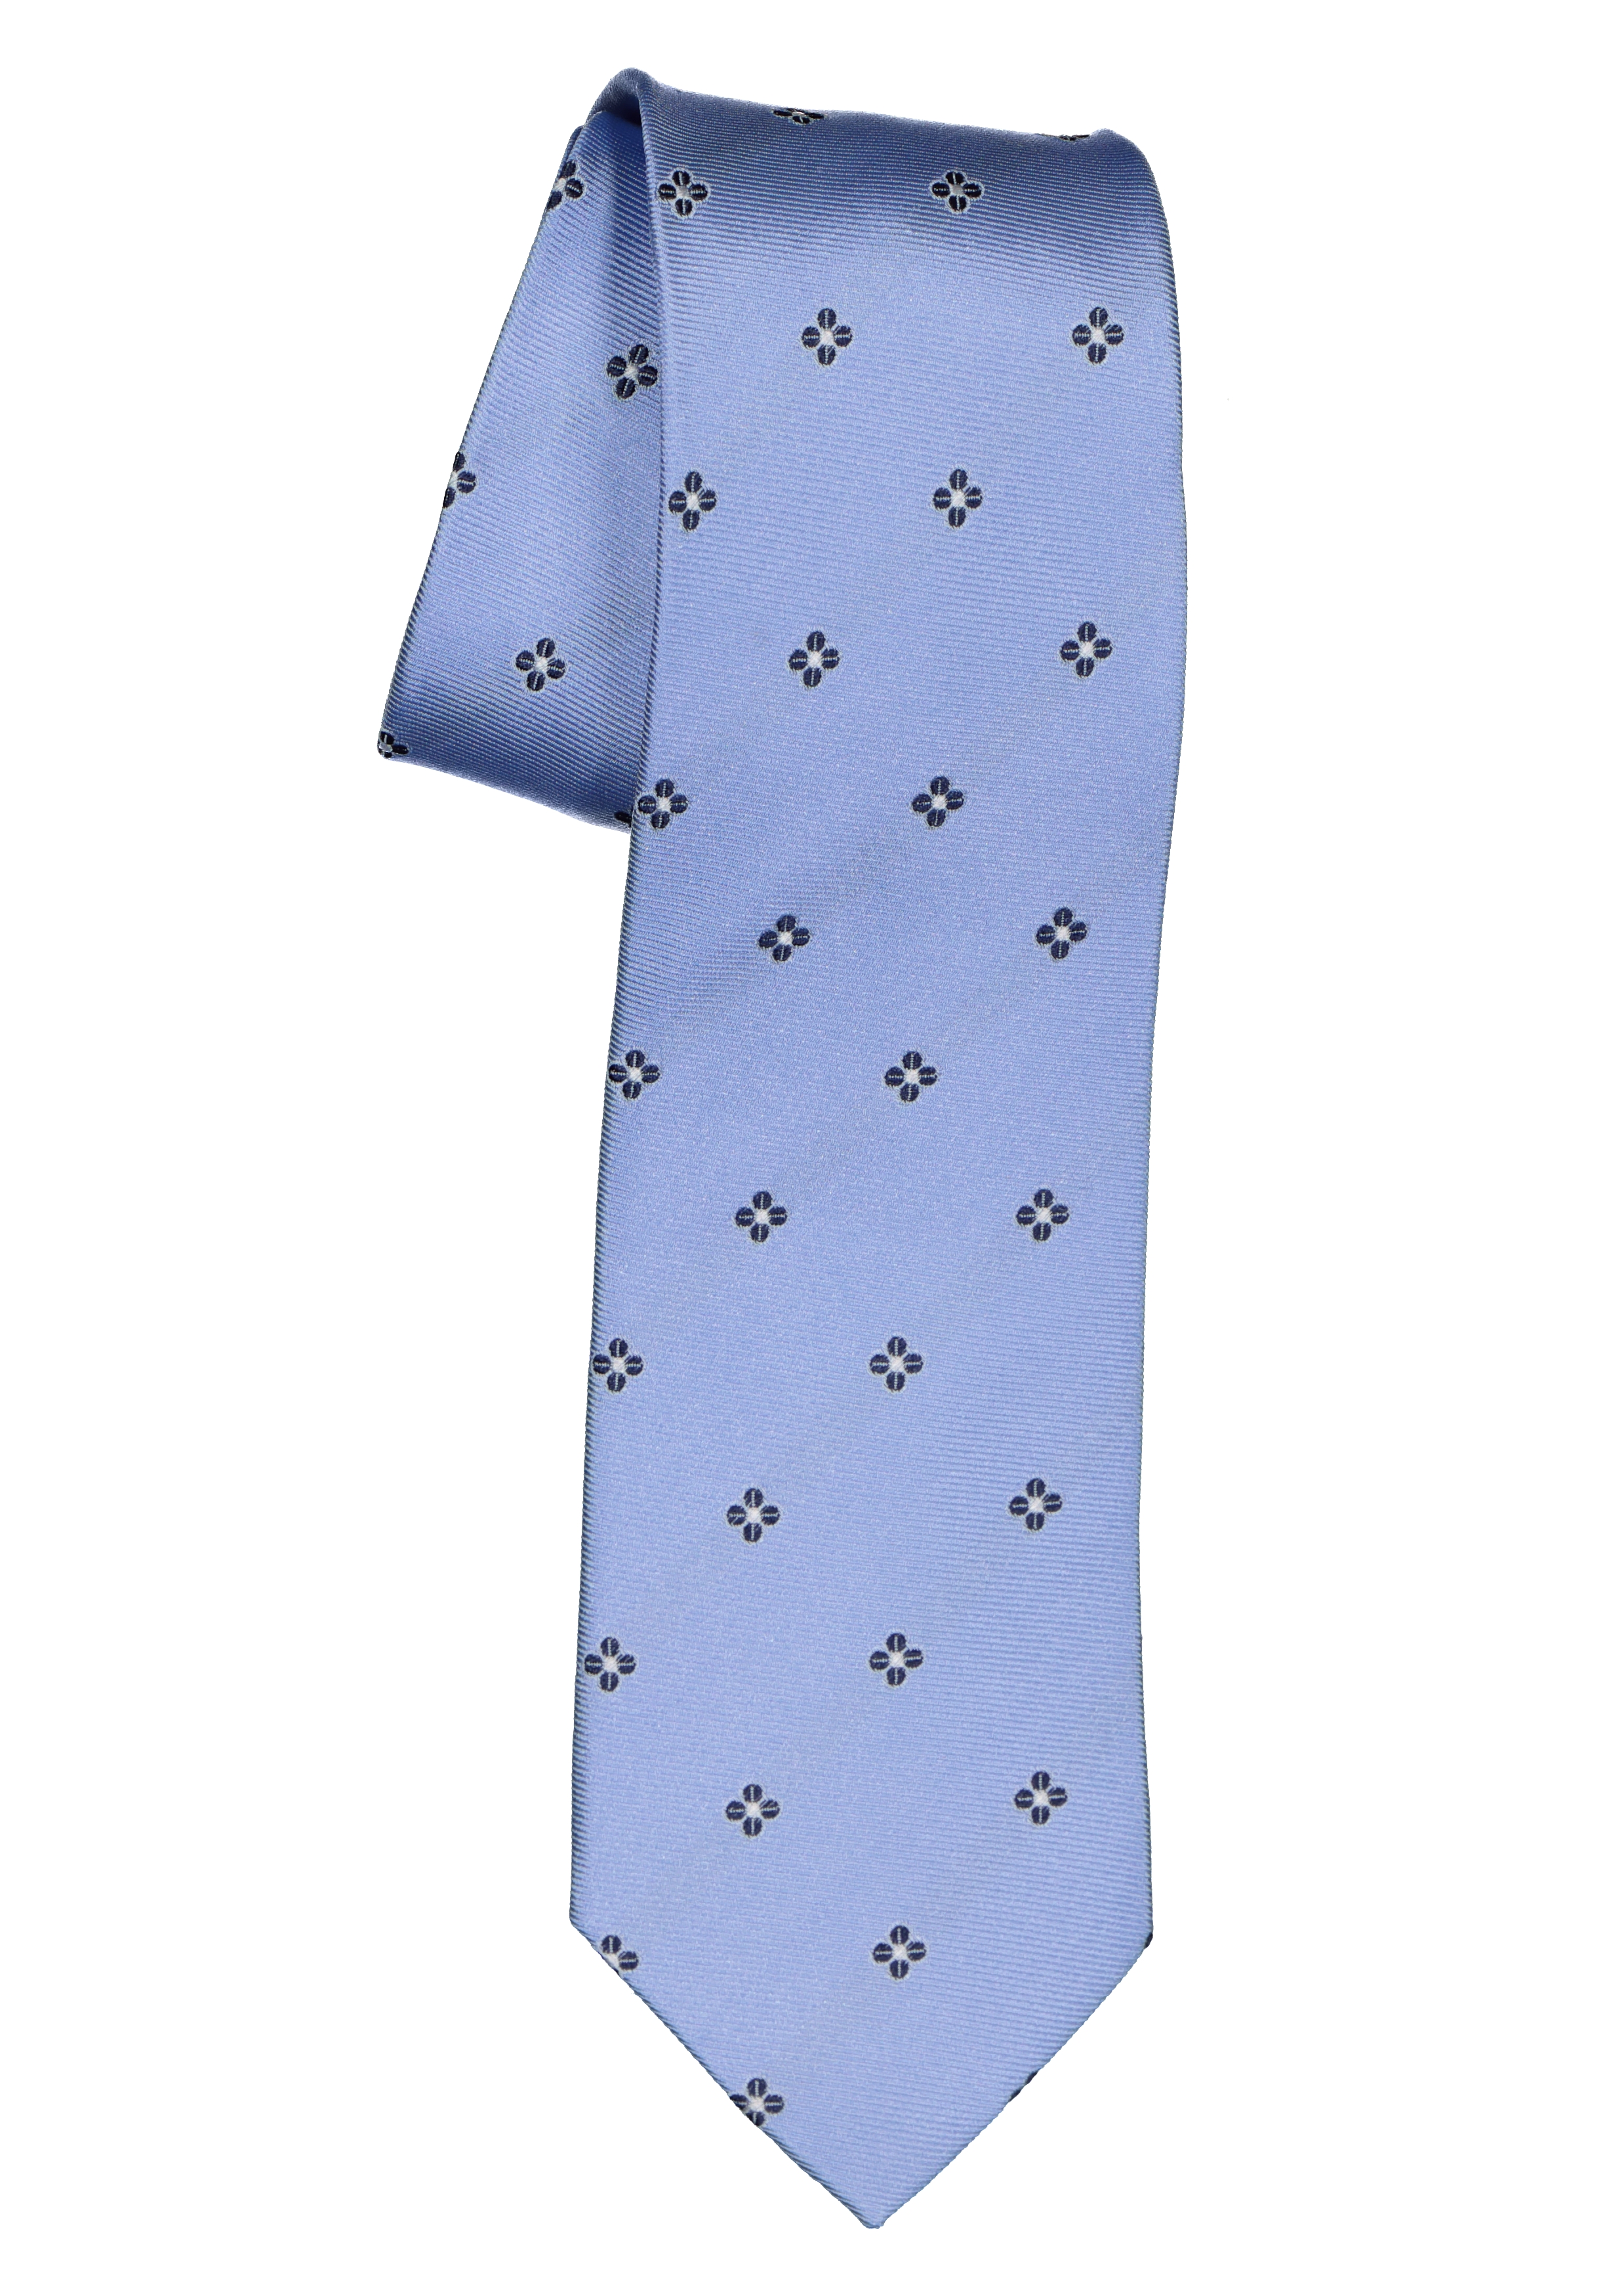 Michaelis stropdas, zijde, lichtblauw met en wit dessin - Shop nieuwste voorjaarsmode